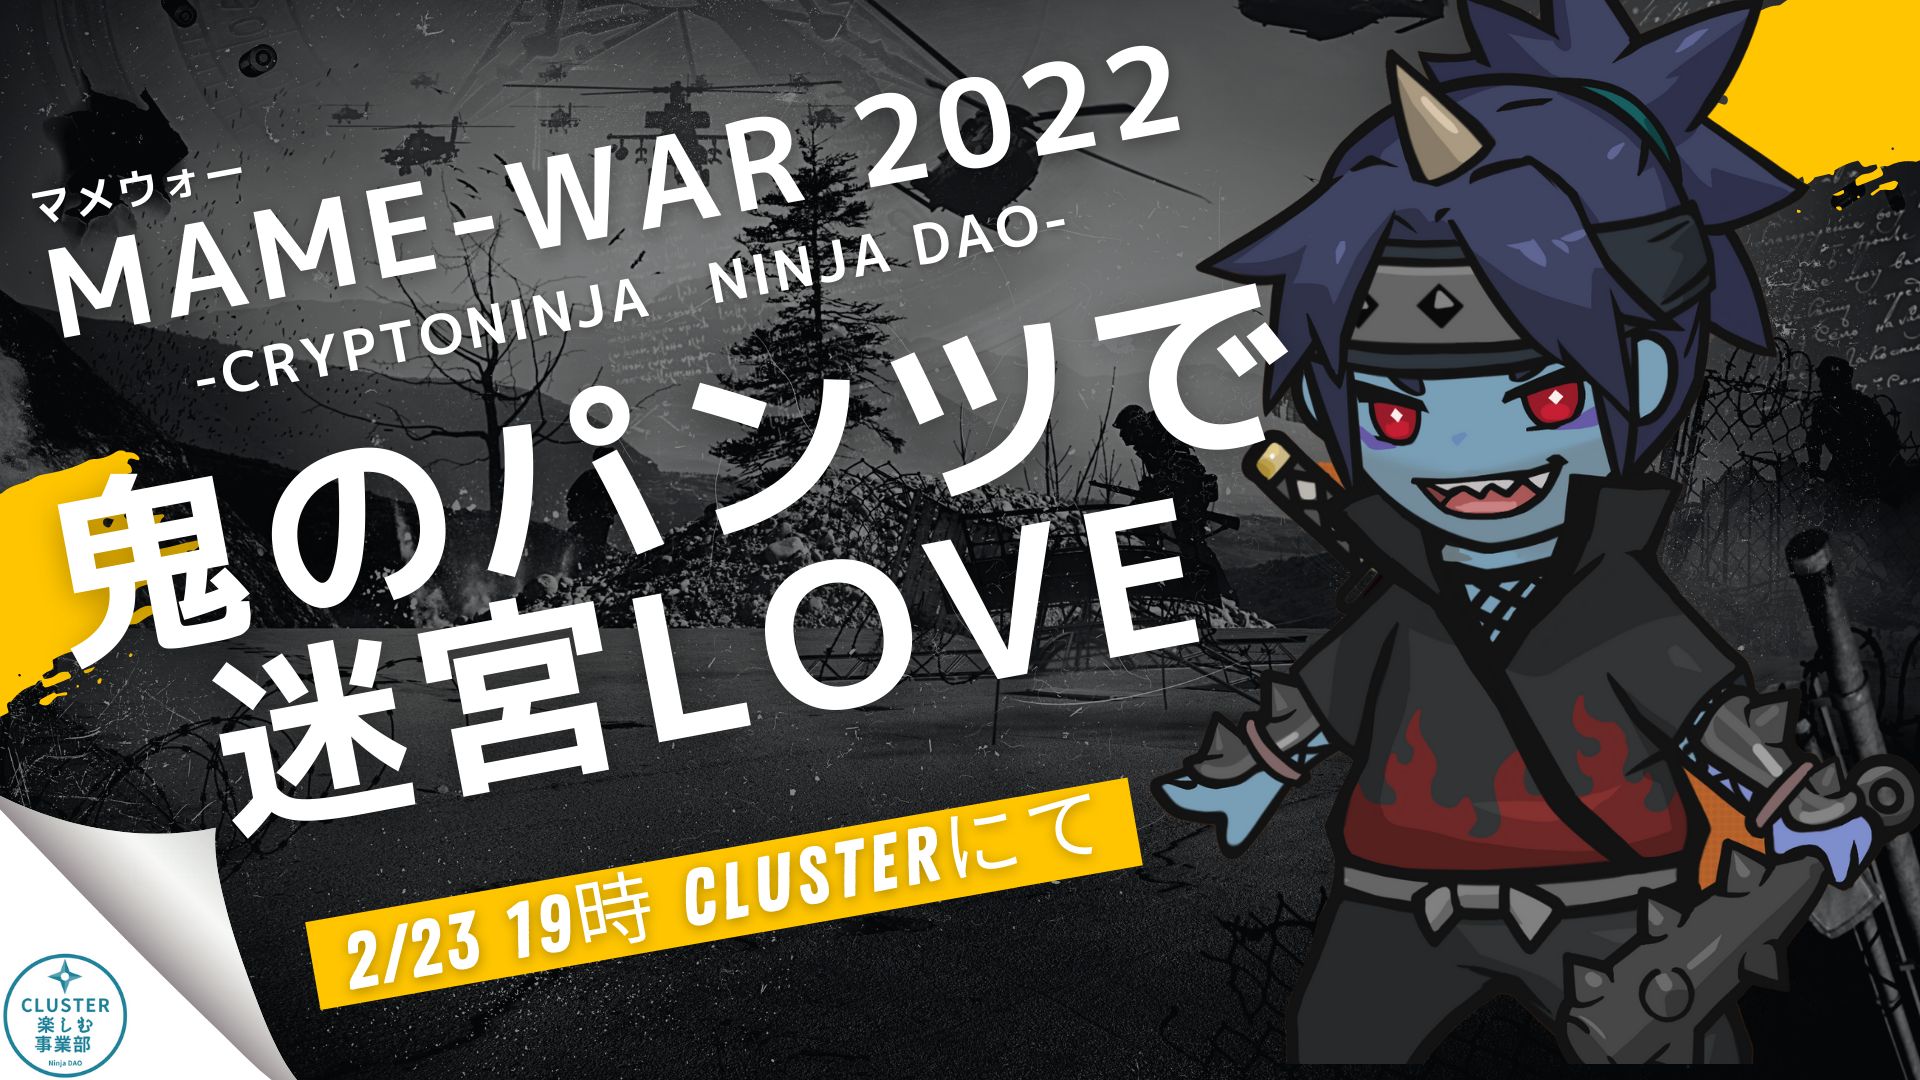 【CryptoNinja】MAME-WAR 2022 (マメウォー) 鬼のパンツで迷宮LOVE